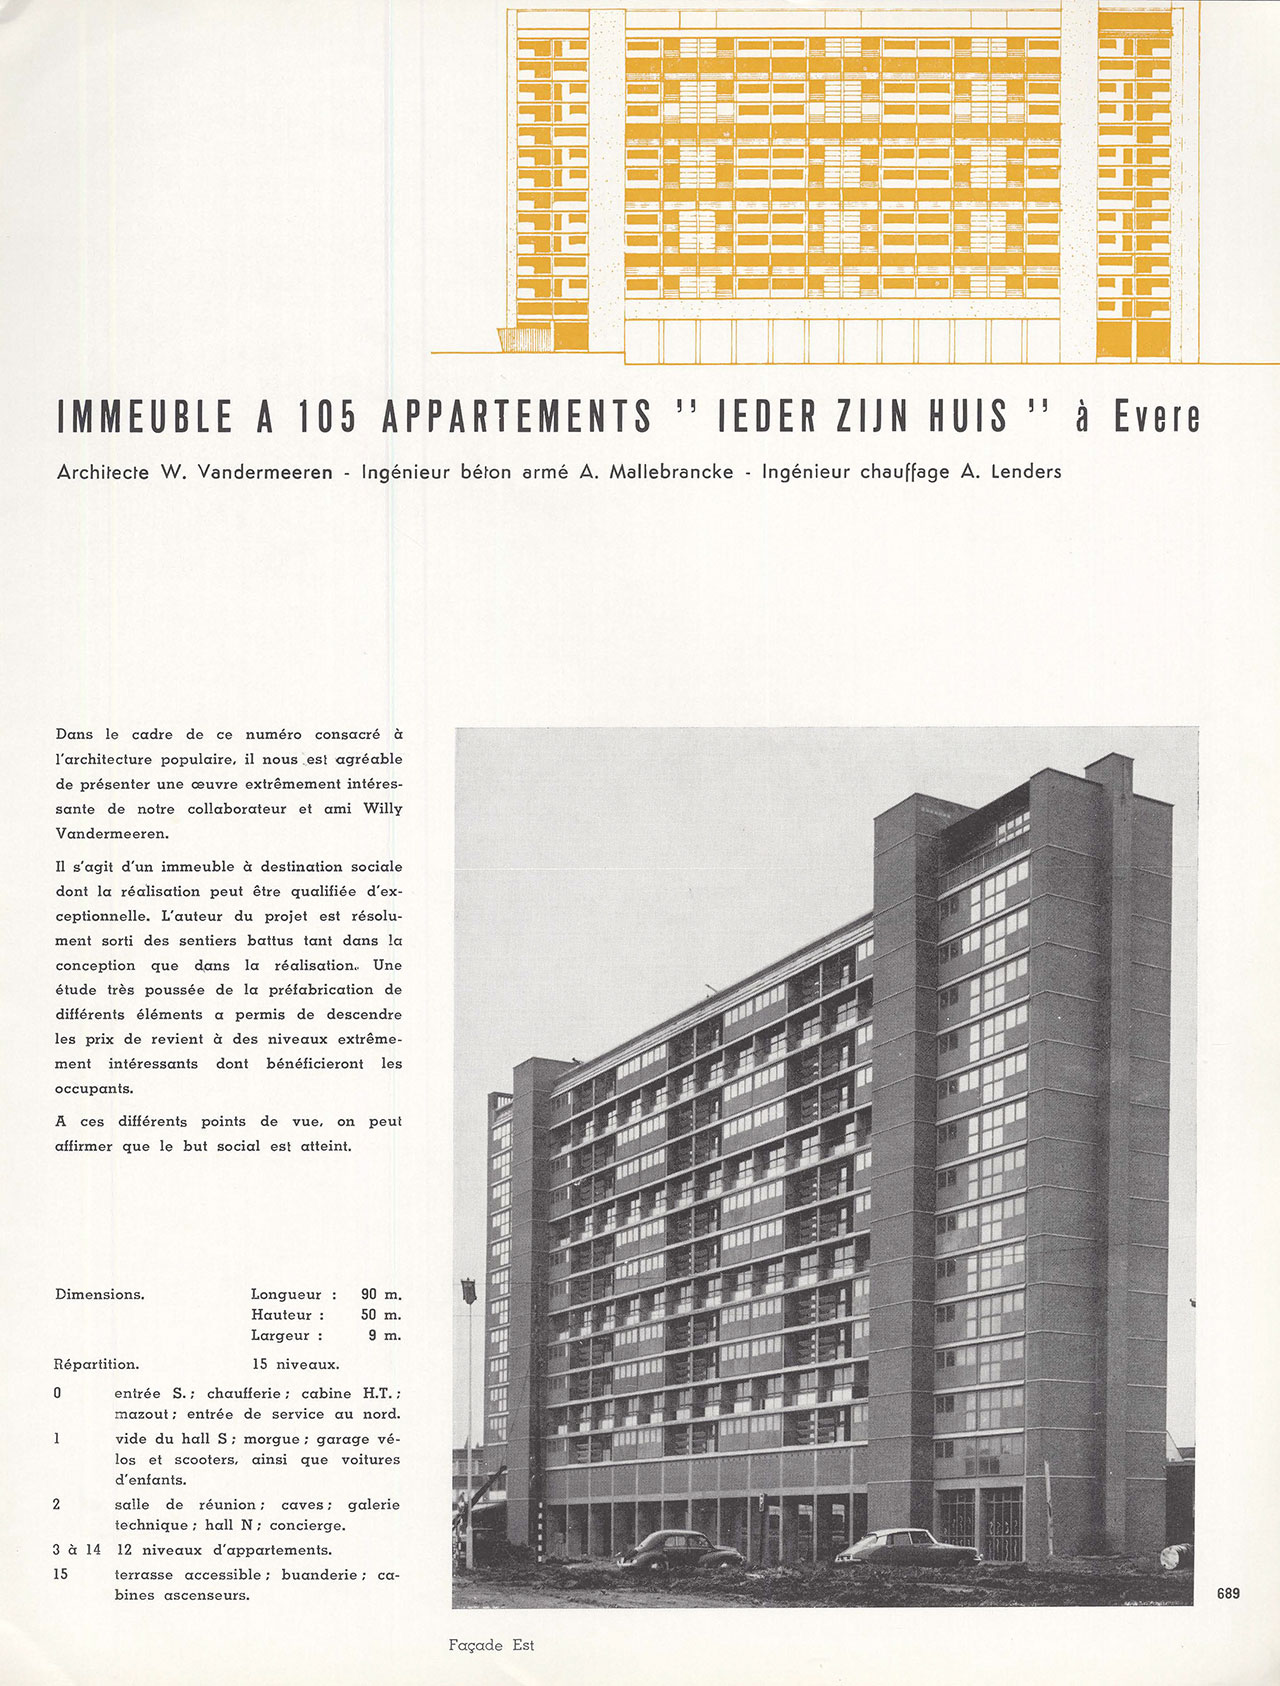 Immeuble à 105 appartements “Ieder Zijn Huis” à Evere